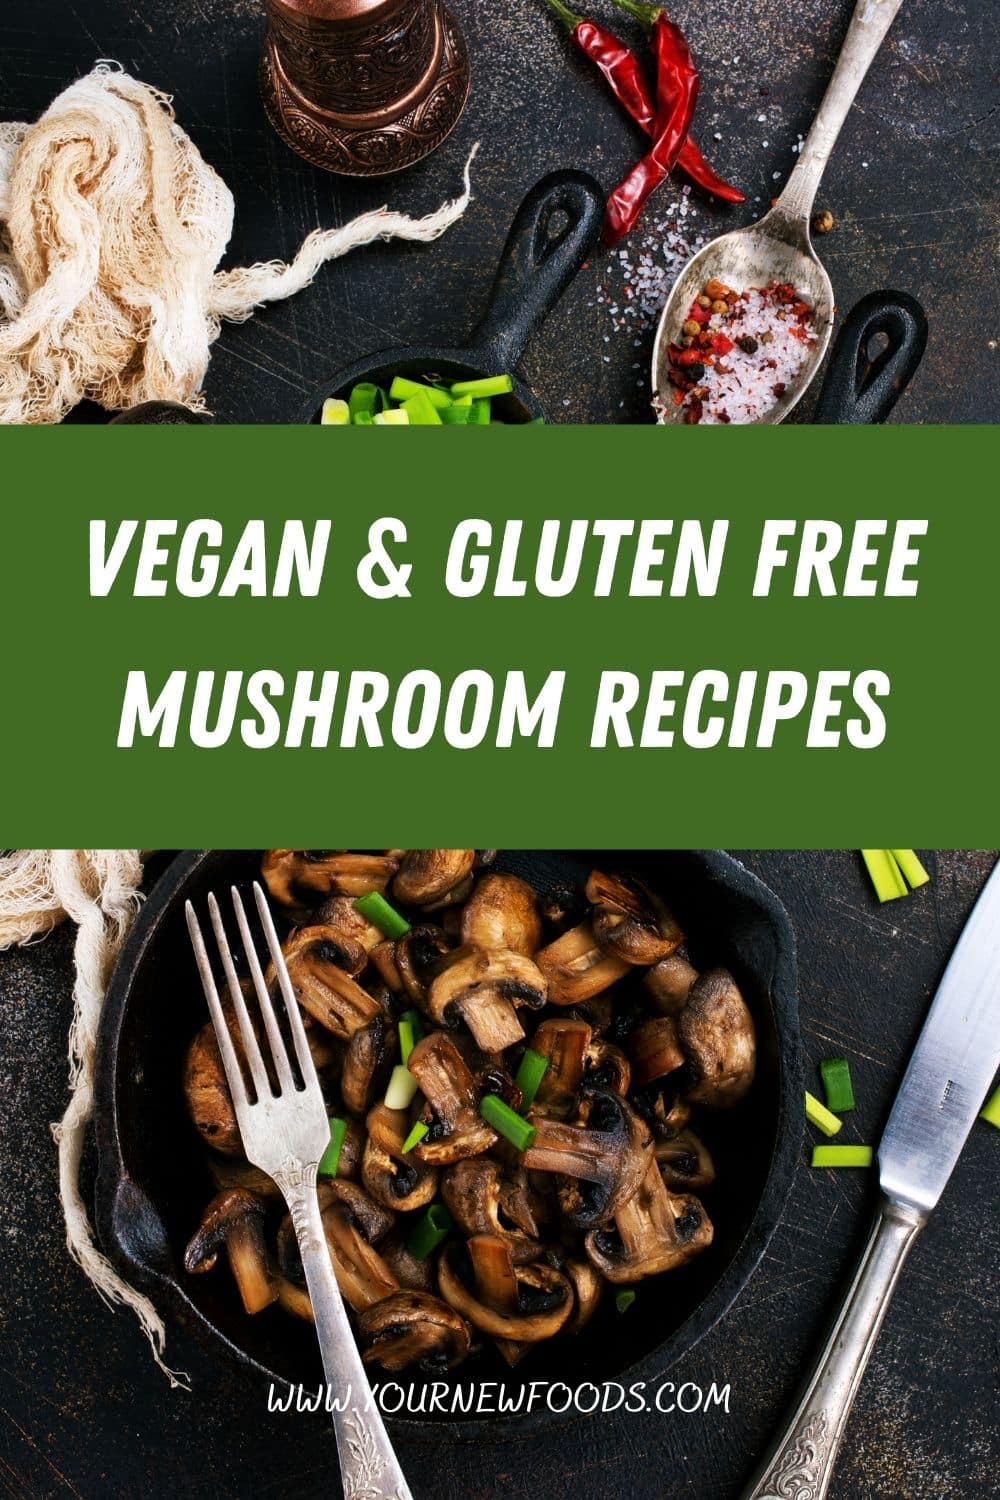 Vegan & Gluten Free mushroom recipes